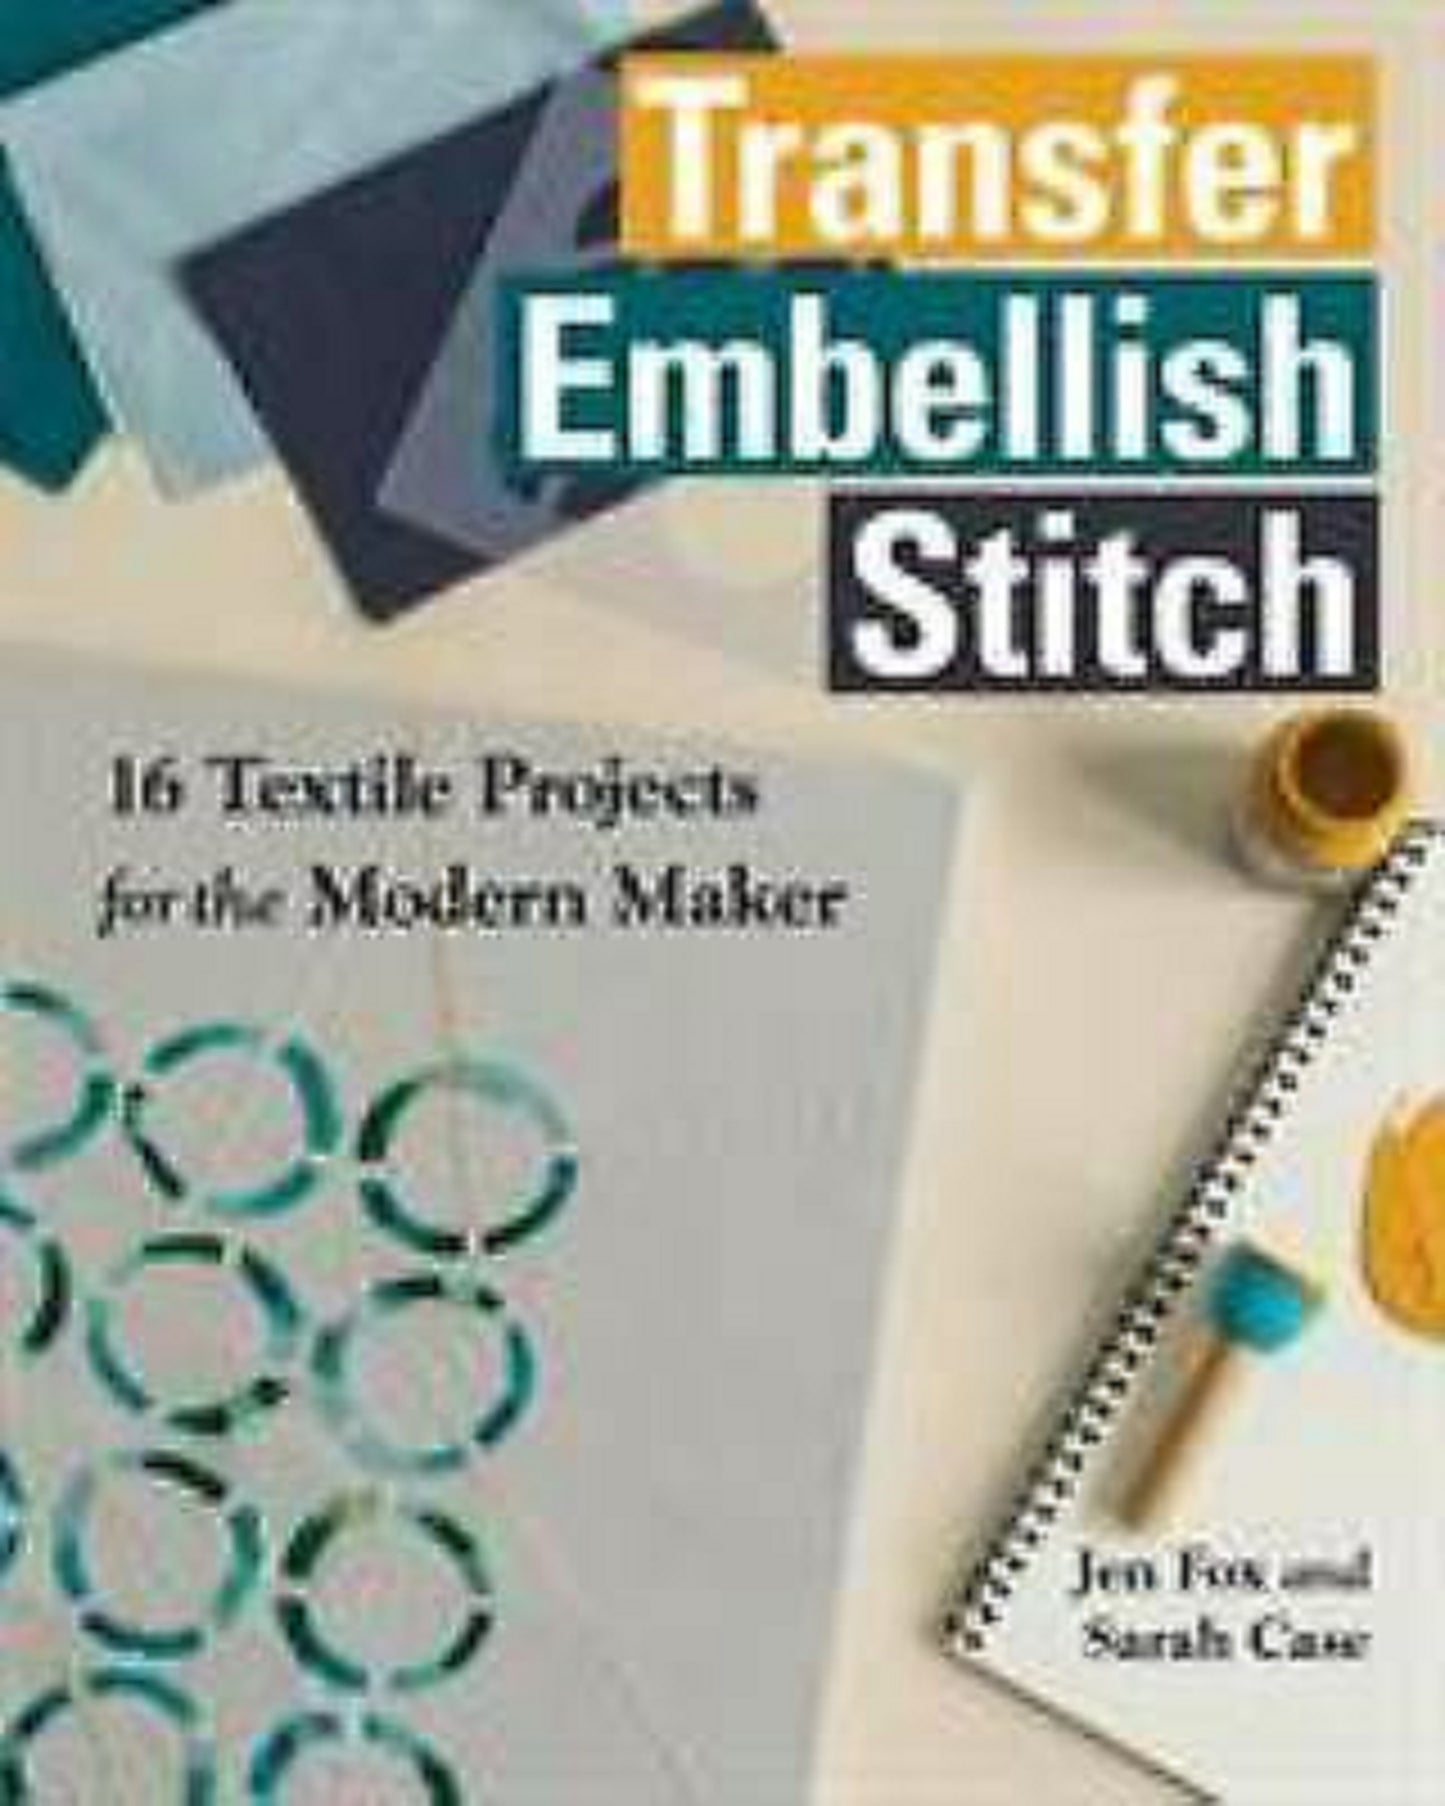 Transfer Embellish Stitch by Jen Fox & Sarah Case